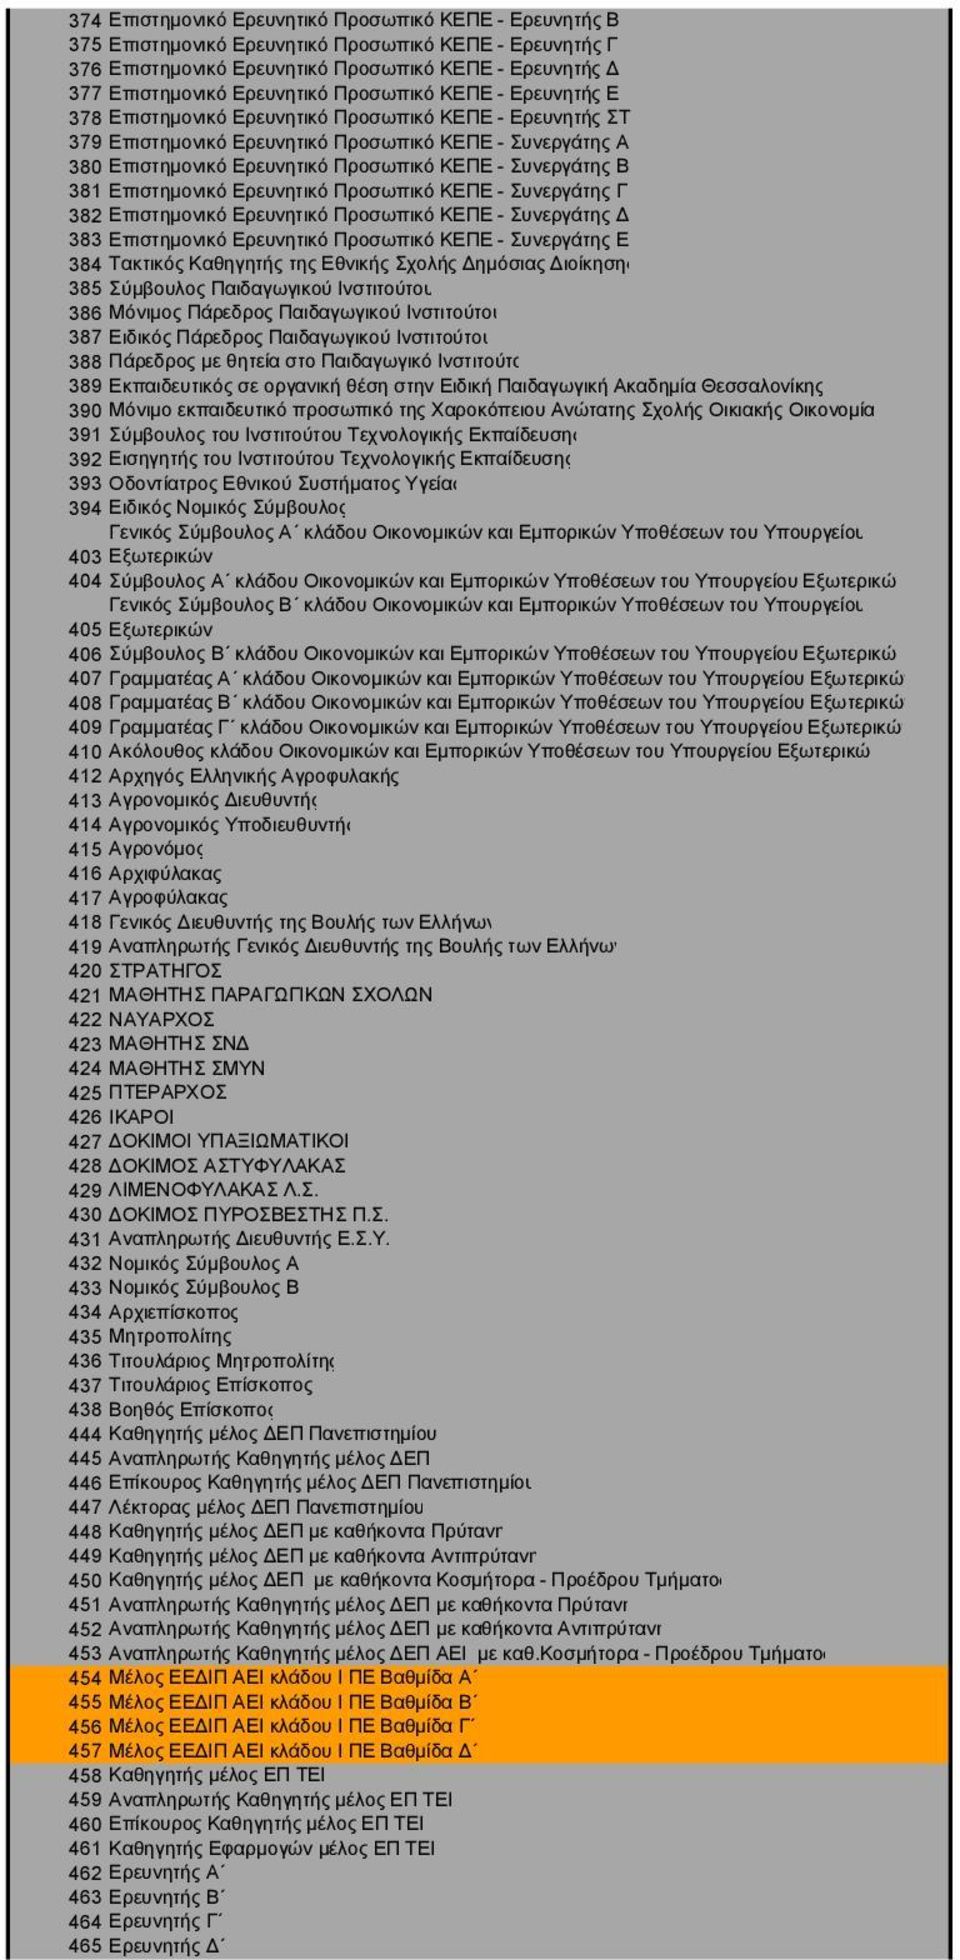 Συνεργάτης Β 381 Επιστημονικό Ερευνητικό Προσωπικό ΚΕΠΕ - Συνεργάτης Γ 382 Επιστημονικό Ερευνητικό Προσωπικό ΚΕΠΕ - Συνεργάτης Δ 383 Επιστημονικό Ερευνητικό Προσωπικό ΚΕΠΕ - Συνεργάτης Ε 384 Τακτικός